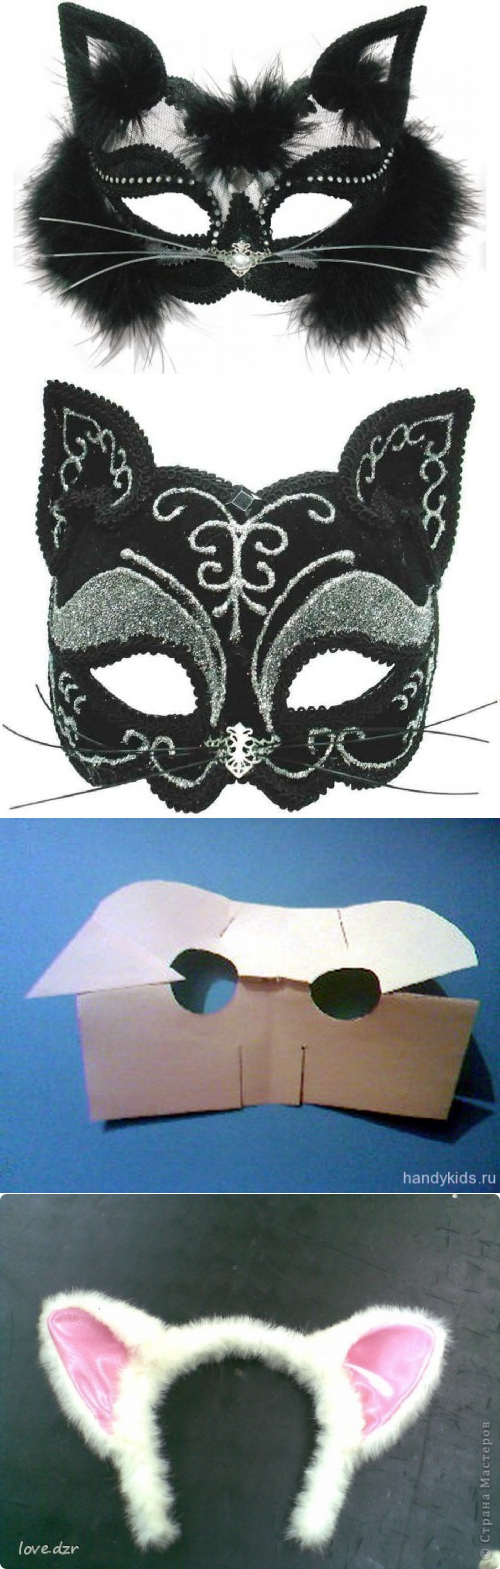 Как сделать маску кошки для маскарада своими руками?